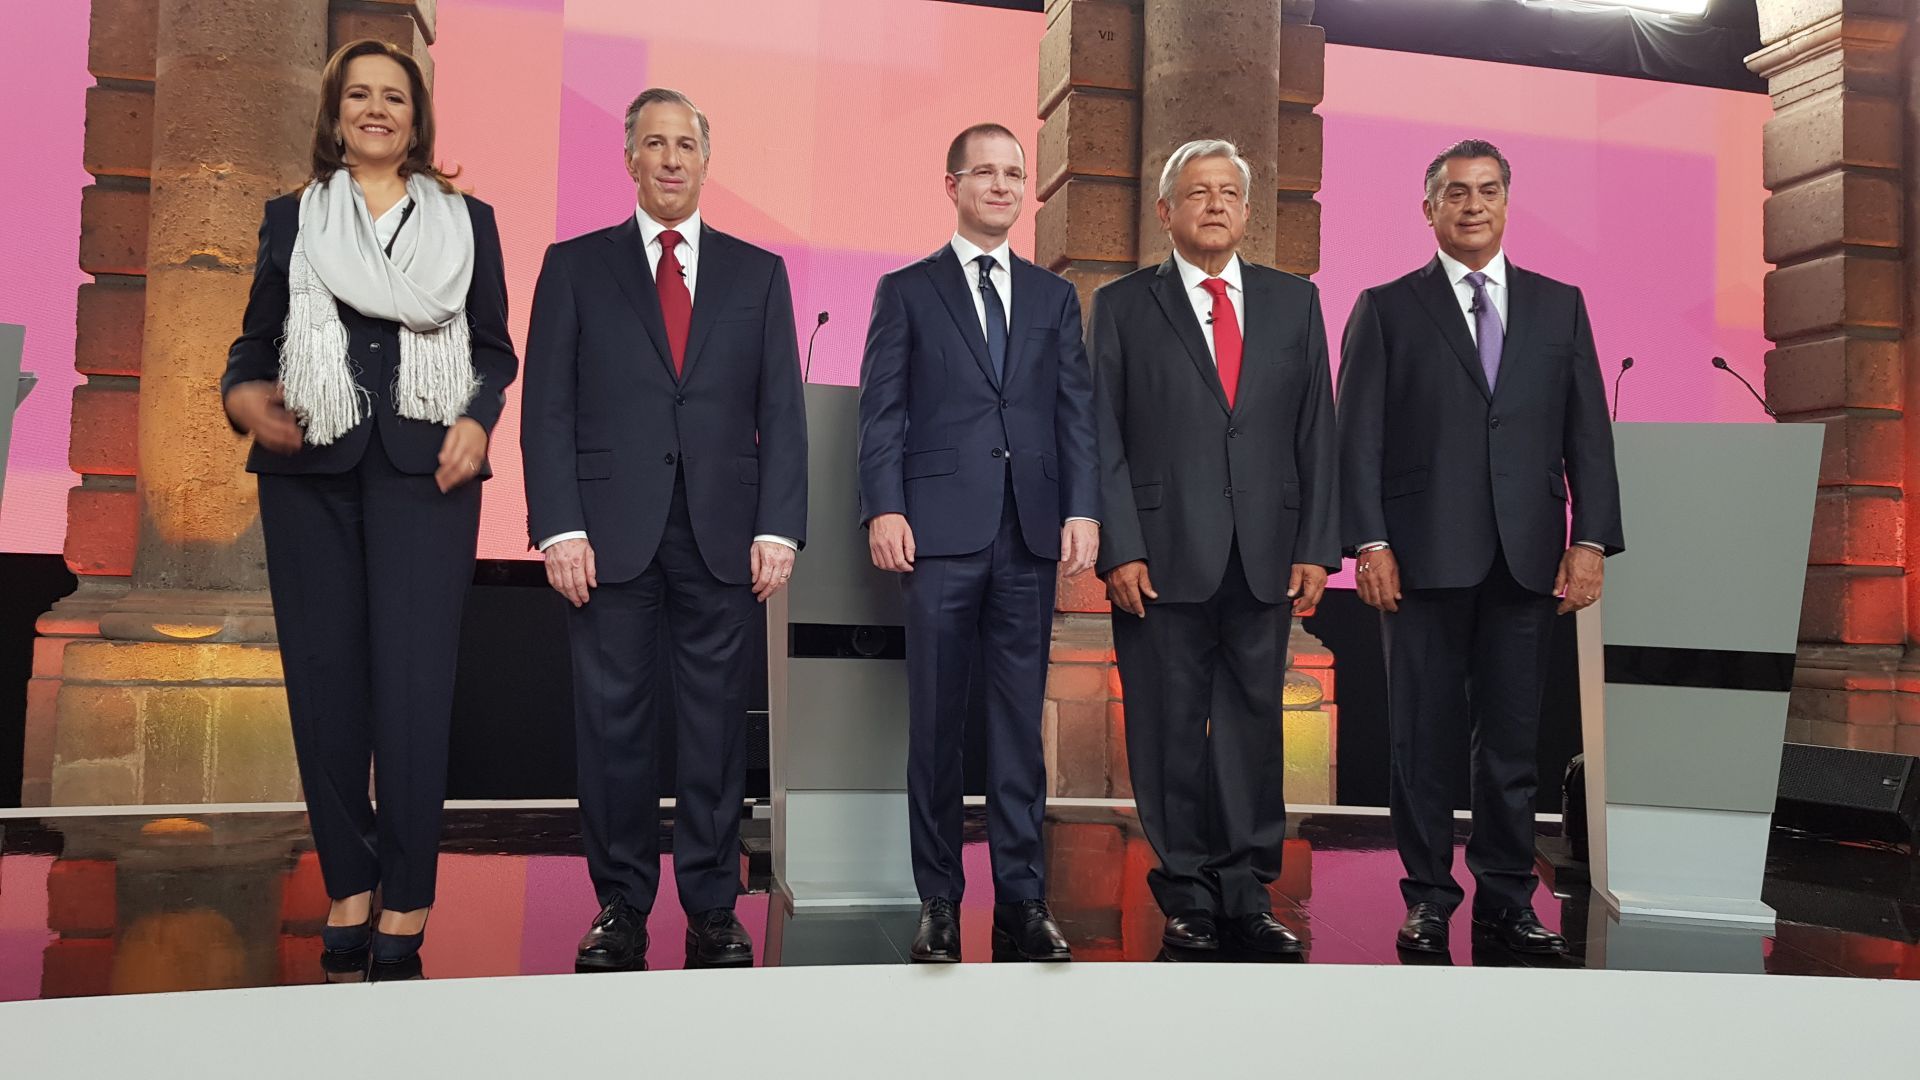 Candidatos de México debaten sobre seguridad, corrupción e impunidad